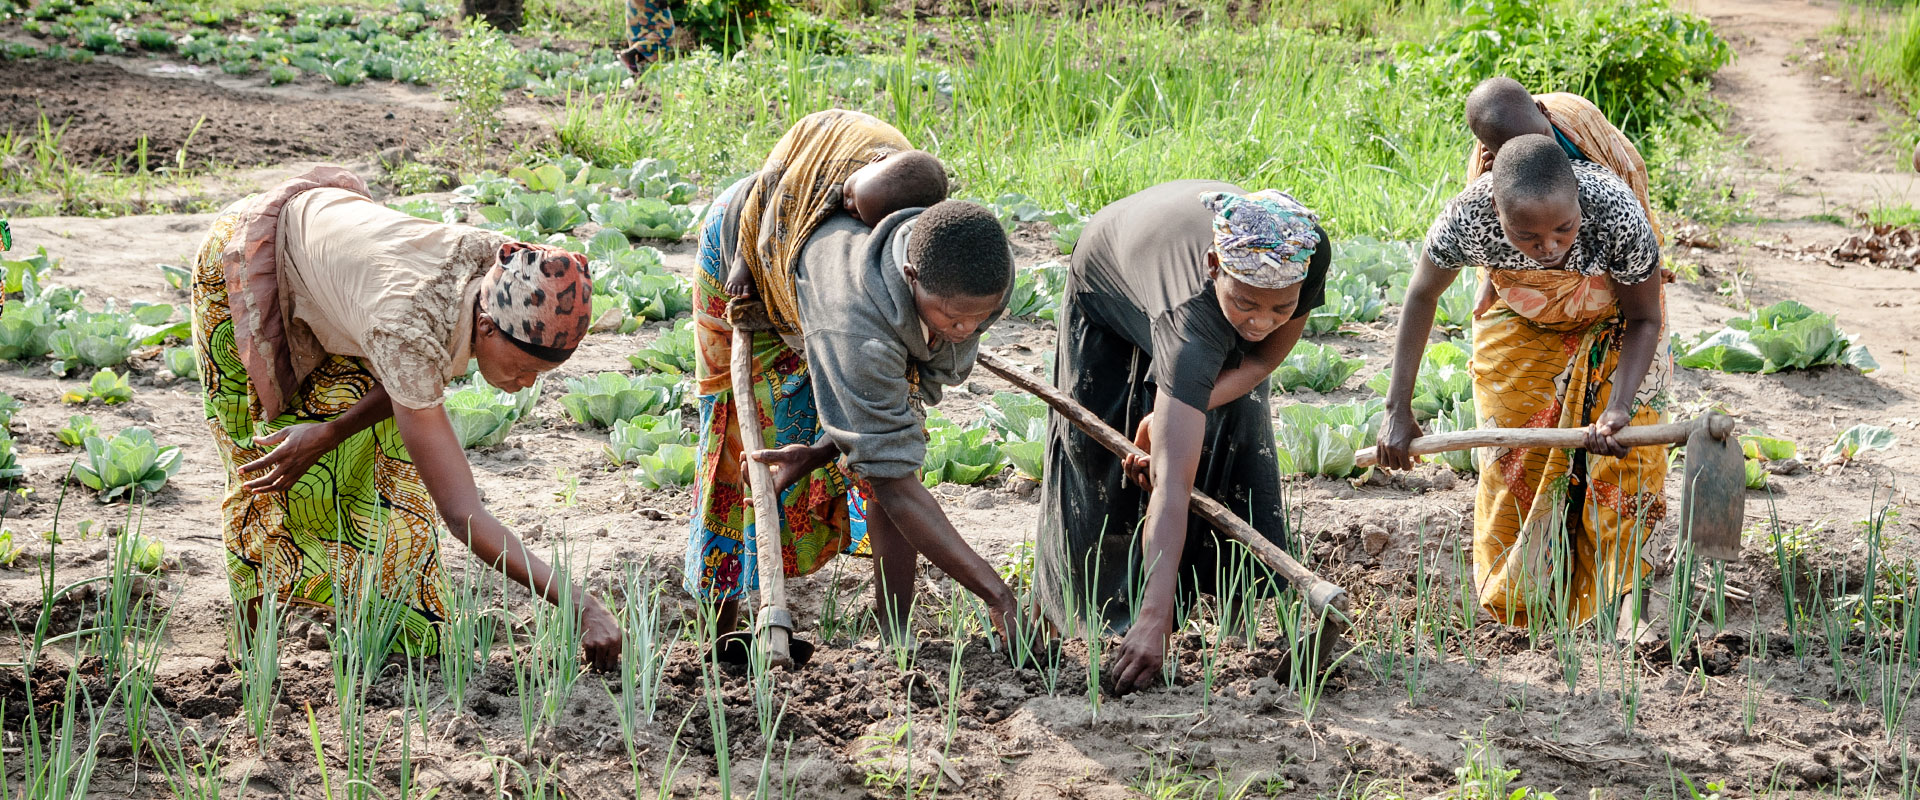 Des femmes dans la province du Sud-Kivu en République démocratique du Congo se regroupent de bon matin pour prendre soin des cultures sur pied qu’elles cultivent de manière collective. Un grand nombre d’entre elles travaillent tout en prenant soin de leurs enfants.